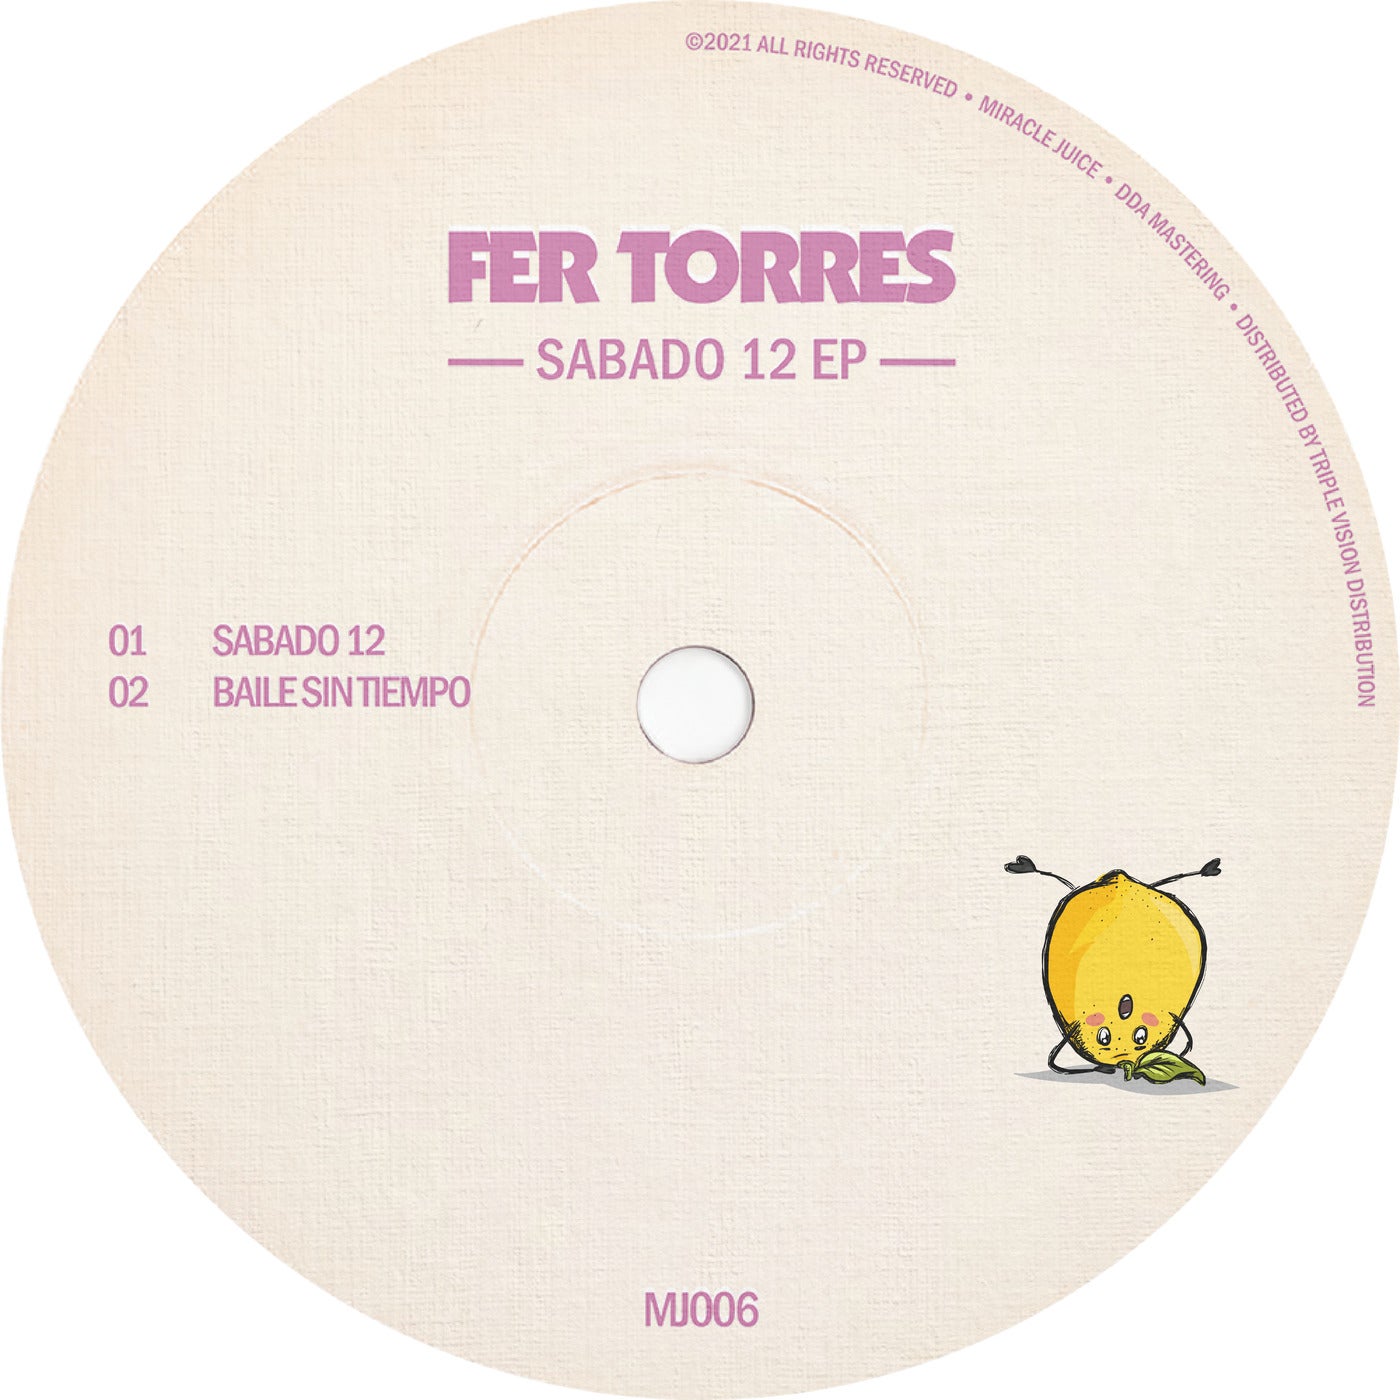 Fer Torres - Sabado 12 EP [MJ006]